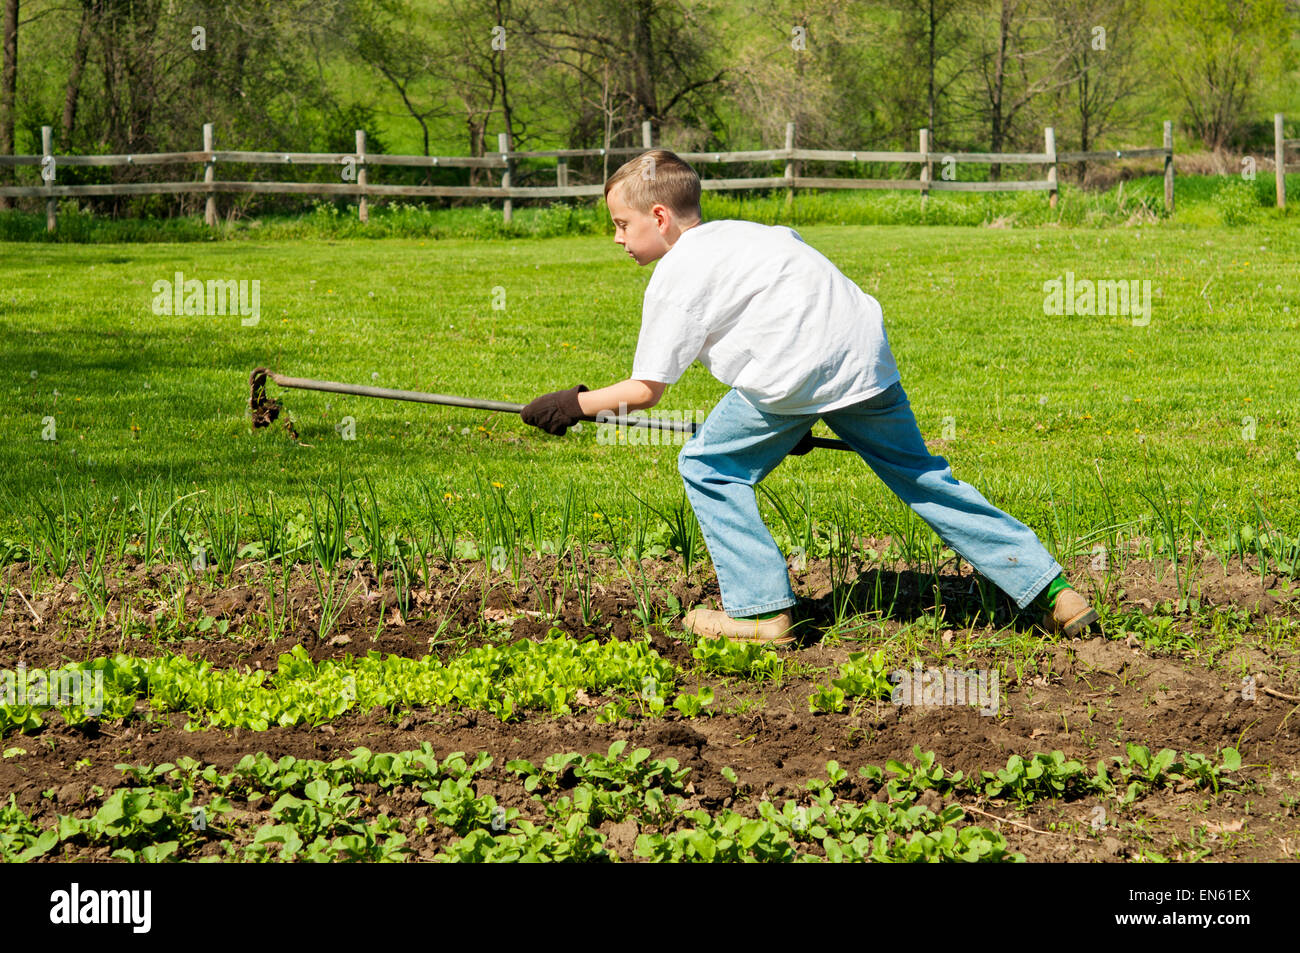 Garçon à l'aide d'hoe de lutte contre les mauvaises herbes dans le jardin de légumes Banque D'Images